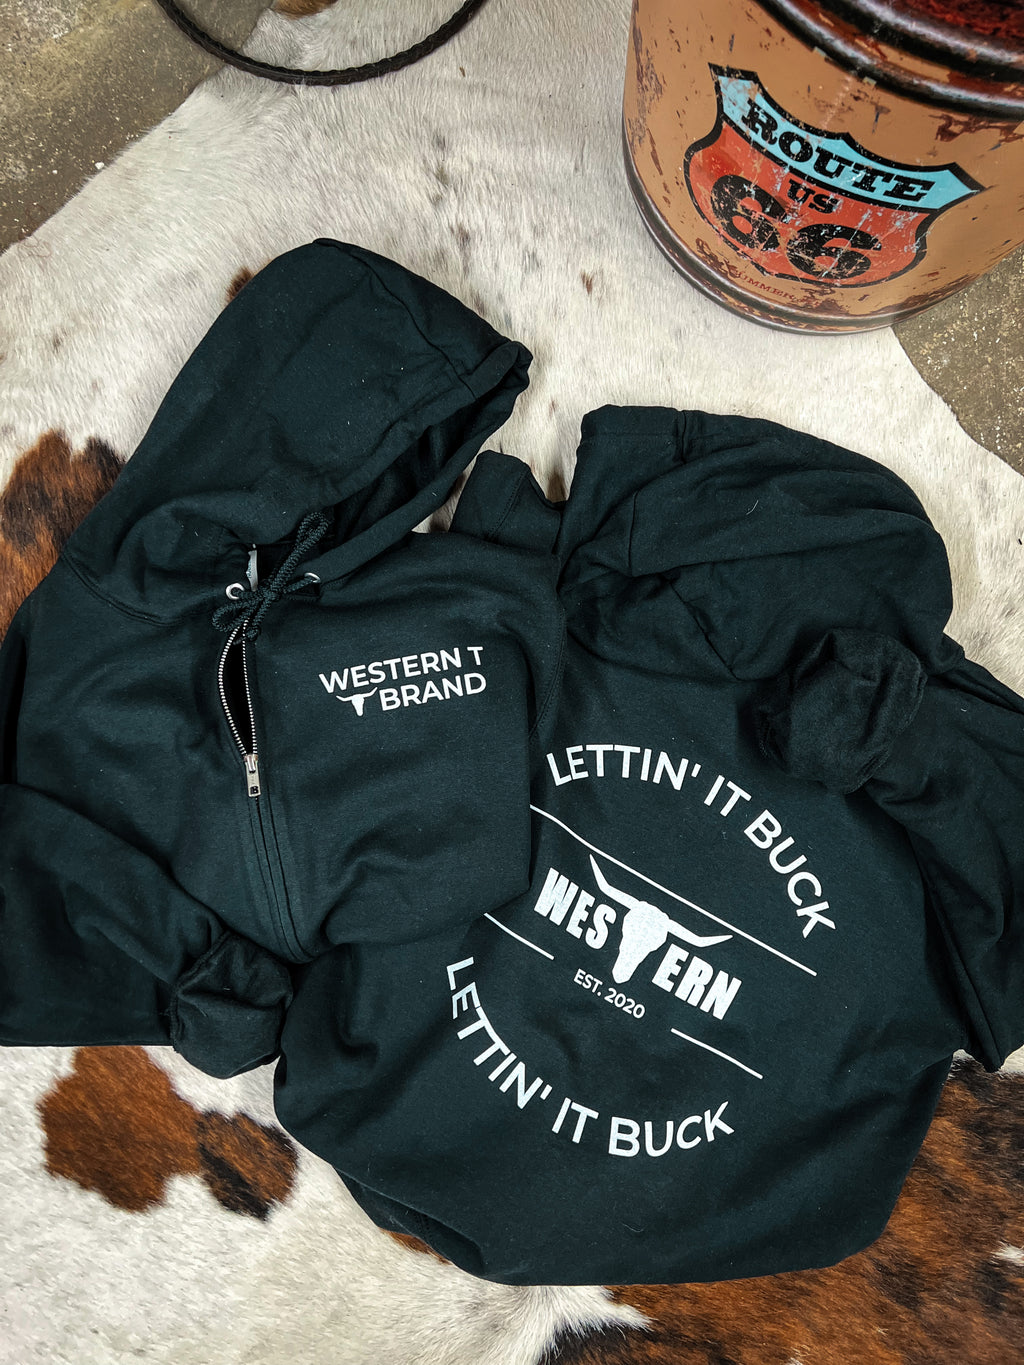 Lettin’ It Buck Brand Jacket